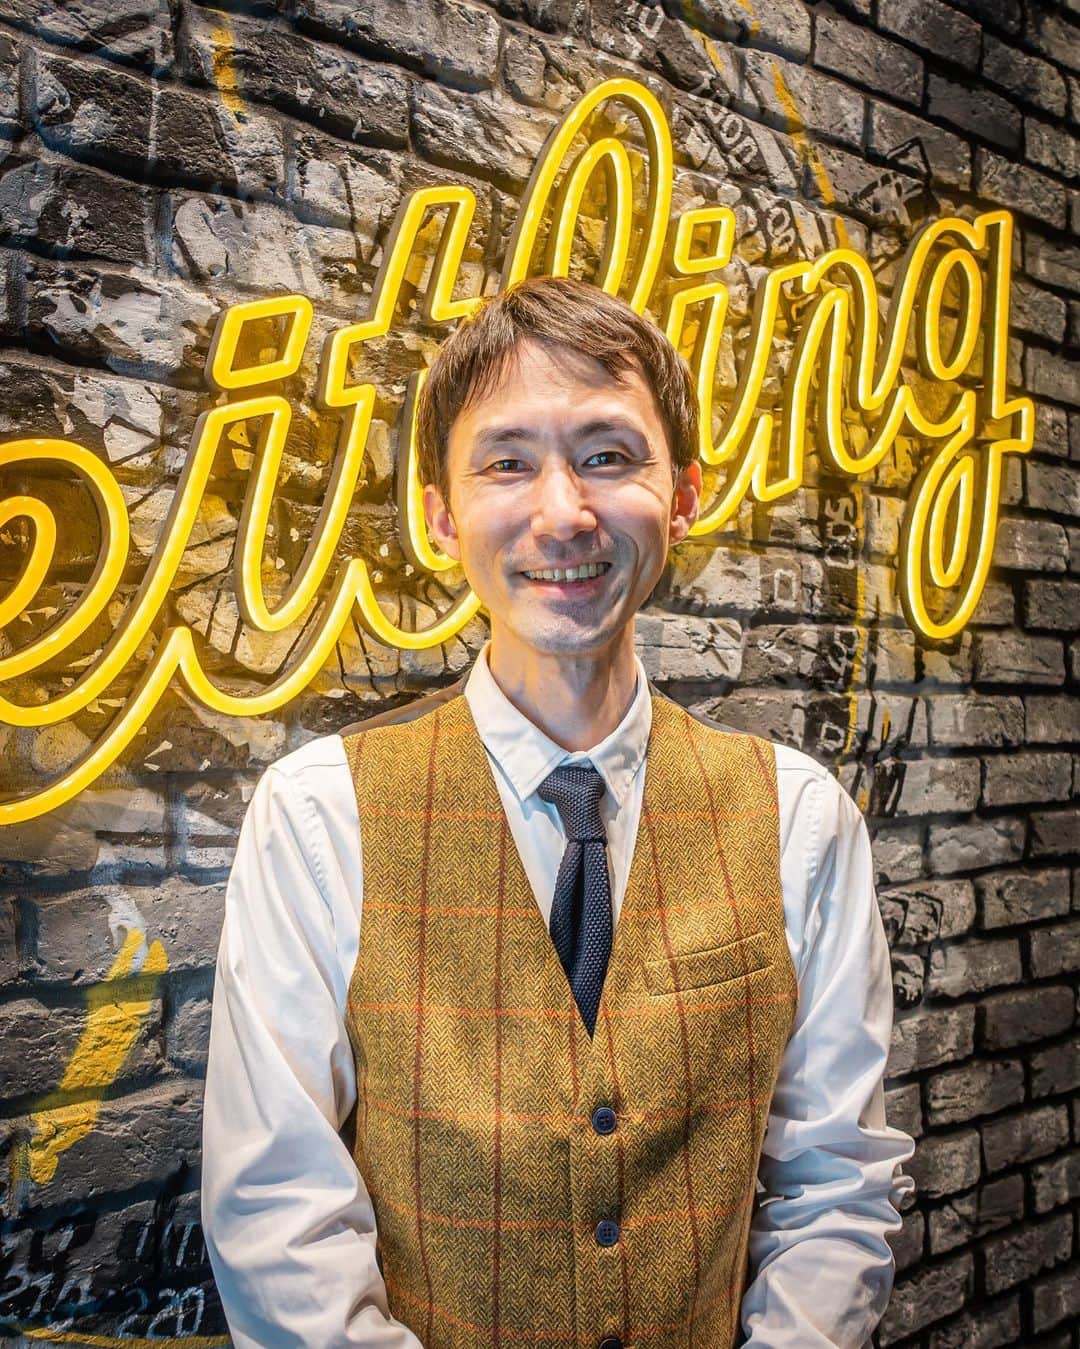 #ぶらエディターズ GINZA SIX オフィシャルさんのインスタグラム写真 - (#ぶらエディターズ GINZA SIX オフィシャルInstagram)「BREITLING BOUTIQUE TOKYO 5F @breitling_ginzasix_squad   日本の商業施設では初となるブライトリングのブティックが、3/25（土）GINZA SIX 5Fにオープンしました✨⌚️ブライトリングとは1884年に設立されたスイスの時計メーカーで、近代のクロノグラフ機構を開発したり、ナビゲーションツールウオッチのパイオニアとしても知られています🇨🇭👏🏻   そんな革新的なメーカーの時計がフルコレクションで揃うのが、BREITLING BOUTIQUE TOKYO（ブライトリング ブティック トウキョウ・📸1枚目）です🙌🏻店頭には、陸、海、空のそれぞれのシーンで活躍するモダンレトロなスタイルの時計が、常時150本以上も並びます！   ブティックに入ったらまず注目したいのが、入口すぐのショーケースです（📸2枚目）✨陳列されているのはブランドのアイコン的な時計、ナビタイマーの最新モデル。中でもナビタイマー B01 クロノグラフ 41のアイスブルーのダイヤル（📸3枚目・税込1,160,500円）は特に人気で、実物を見られるブティックが限られているそう👀💫見つけたら要チェックです✍️✅   ほかにも品格漂うプレミエ コレクション（📸4枚目・プレミエ B01 クロノグラフ 42 税込1,100,000円）やフォード マスタングやシェルビー コブラなど往年のアメリカ車からインスピレーションを得て作られたトップタイム クラシックカーズ（📸5枚目・トップタイム B01 シボレーコルベット 税込990,000円）など、発表間もないモデルも見逃せません！✨   さらに世界でもわずか数店舗、国内ではここだけとなるアパレルも販売（📸6枚目）😳👕！これはオーストラリアのブランド、デウス・エクス・マキナ @deusresidenceとのコラボレーションによって生まれたもの。デウス・エクス・マキナはハンドビルトのカスタムバイクやパーツの販売にはじまり、サーフィンやスノーボード、自転車、音楽などさまざまなカルチャーにまつわるアパレルアイテムを展開するブランドです🏄🌴🏂☃️🗻   ブライトリング ブティック トウキョウには、タイポグラフィが背面に描かれたブライトリングカラーのイエローのTシャツ（📸7枚目・税込9,900円）や、両ブランドのロゴマークが並ぶキャップ（📸8枚目・税込5,500円）など、リラックスして着られそうなアパレルアイテムがズラリ👏🏻   内装は全世界のブティックと同様に、インダストリアル・ロフトと呼ばれるブランドの最新デザインコンセプトで彩られています（📹9枚目）。レンガ倉庫のような空間にヴィンテージ風のペンダントランプ、味わい深いオリジナルの什器、クラシカルな自転車などを巧みに配したモダンレトロな雰囲気は、まるで大人の隠れ家のよう☺️   さらに路面店と違ってドアがなくて間口が広いので、開放的で立ち寄りやすい佇まいも魅力。実際ふらっと入店する人も多く、中に入るとブライトリングに精通したブランド公認のスペシャリストたちが迎えてくれます。中でも森祐二店長（📸10枚目）はウオッチコーディネーターの資格を持つ時計販売のスペシャリスト😳✨ブライトリングについてはもちろん、時計の歴史や技術的なことなど幅広い知識を備えた、頼れる方なのです🙋🏻‍♂️❣️   ブライトリングの魅力について森店長はこう話します。「1940年代〜’80年代にすでに完成されたデザインを、さらに現代の技術でブラッシュアップしたモデルが多く、ヴィンテージウオッチの雰囲気を最新のキャリバー（ムーブメント）で味わえます。しかもキャリバーの多くが自社製で、シースルーバックと呼ばれる透明な裏蓋を採用しているモデルがほとんど。複雑でメカニカルなキャリバーの動きを眺めて楽しめることもポイントです」   長く使う時計だからこそ、充実したアフターサービスはブランドの要でもあります✨同じ銀座の4丁目には、サービスセンターであるスタジオ ブライトリング銀座があり、ベテランの時計修理技能士たちが修理やメインテナンスを行ってくれるので、安心して預けられるのも嬉しい点です😊🙌🏻   現在、ブライトリング ブティック トウキョウでは時計を試着した腕元をInstagramにアップすると、ギフトがもらえるイベントを不定期で開催中。今後もこうしたイベントを増やしていき、さらに盛り上げていきたいと話す森店長🙋🏻‍♂️🌟気負わず入れるブライトリング ブティックで、ブランドの世界観や時計の魅力に触れてみましょう！   ―― 5F ☎03-4588-6484 ――   #ブライトリング #東京 #銀座 #腕時計 #breitling #watch #ウォッチ #japan #swiss  #swissmade #squadonamission #land #sea #air #空 #陸 #海 #pilot #diver #deus #デウス #deusexmachina #navitimer #ナビタイマー #ginza #ginzasix #ギンザシックス   @ginzasix_official」4月22日 12時00分 - ginzasix_official